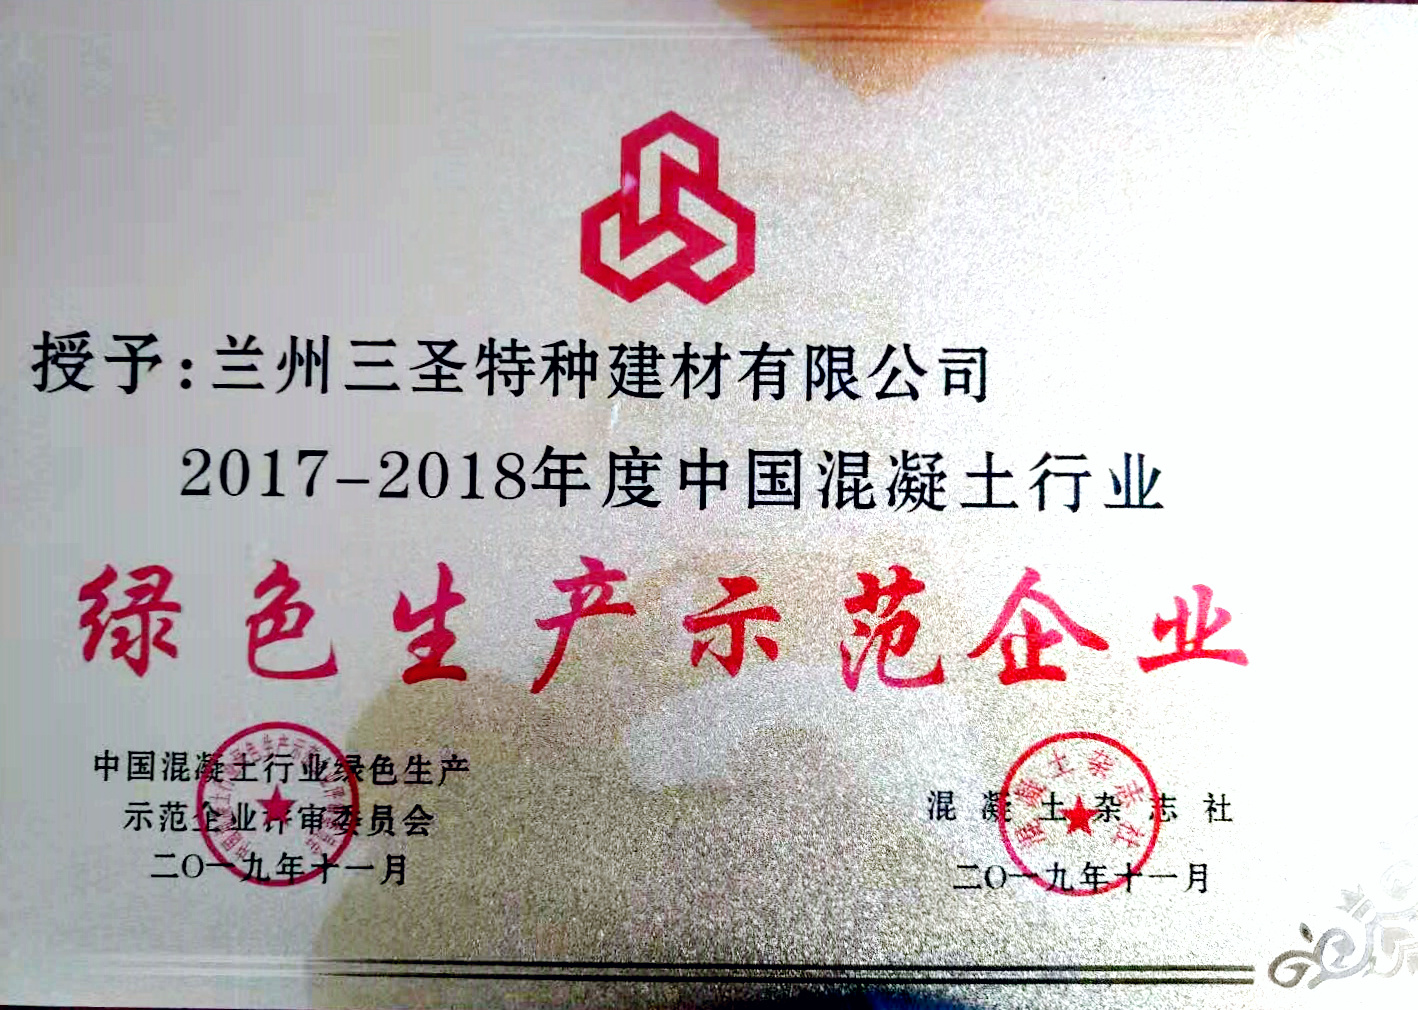 公司旗下5家企业均荣获中国混凝土行业绿色生产示范企业称号